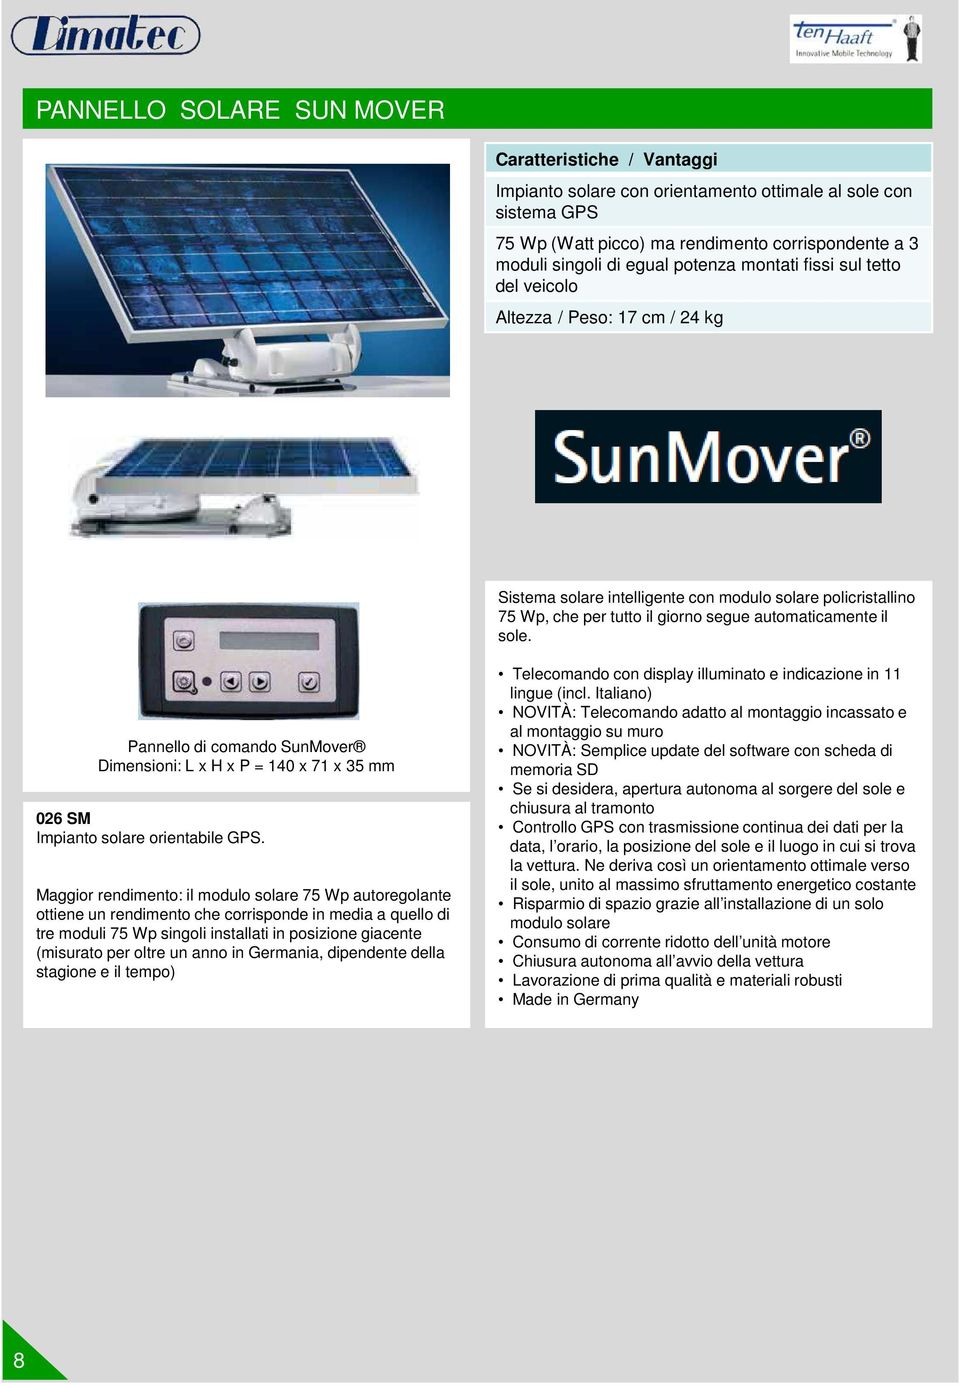 Pannello di comando SunMover Dimensioni: L x H x P = 140 x 71 x 35 mm 026 SM Impianto solare orientabile GPS.